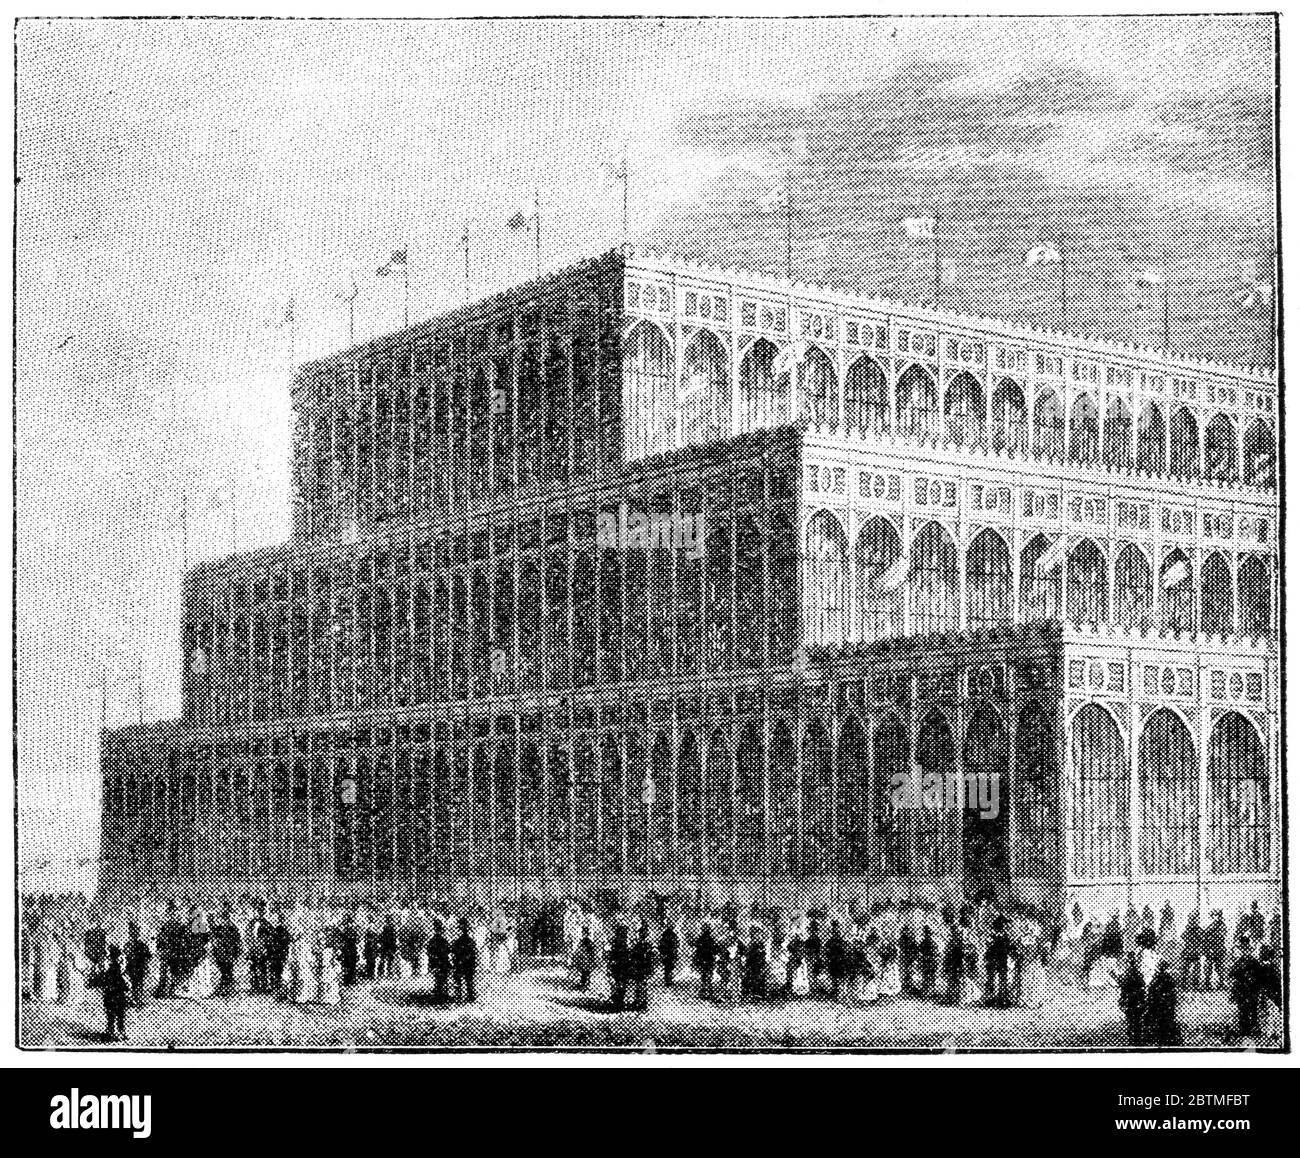 Der Crystal Palace (hinten) im Hyde Park für die große internationale Ausstellung von 1851, London. Illustration des 19. Jahrhunderts. Weißer Hintergrund. Stockfoto